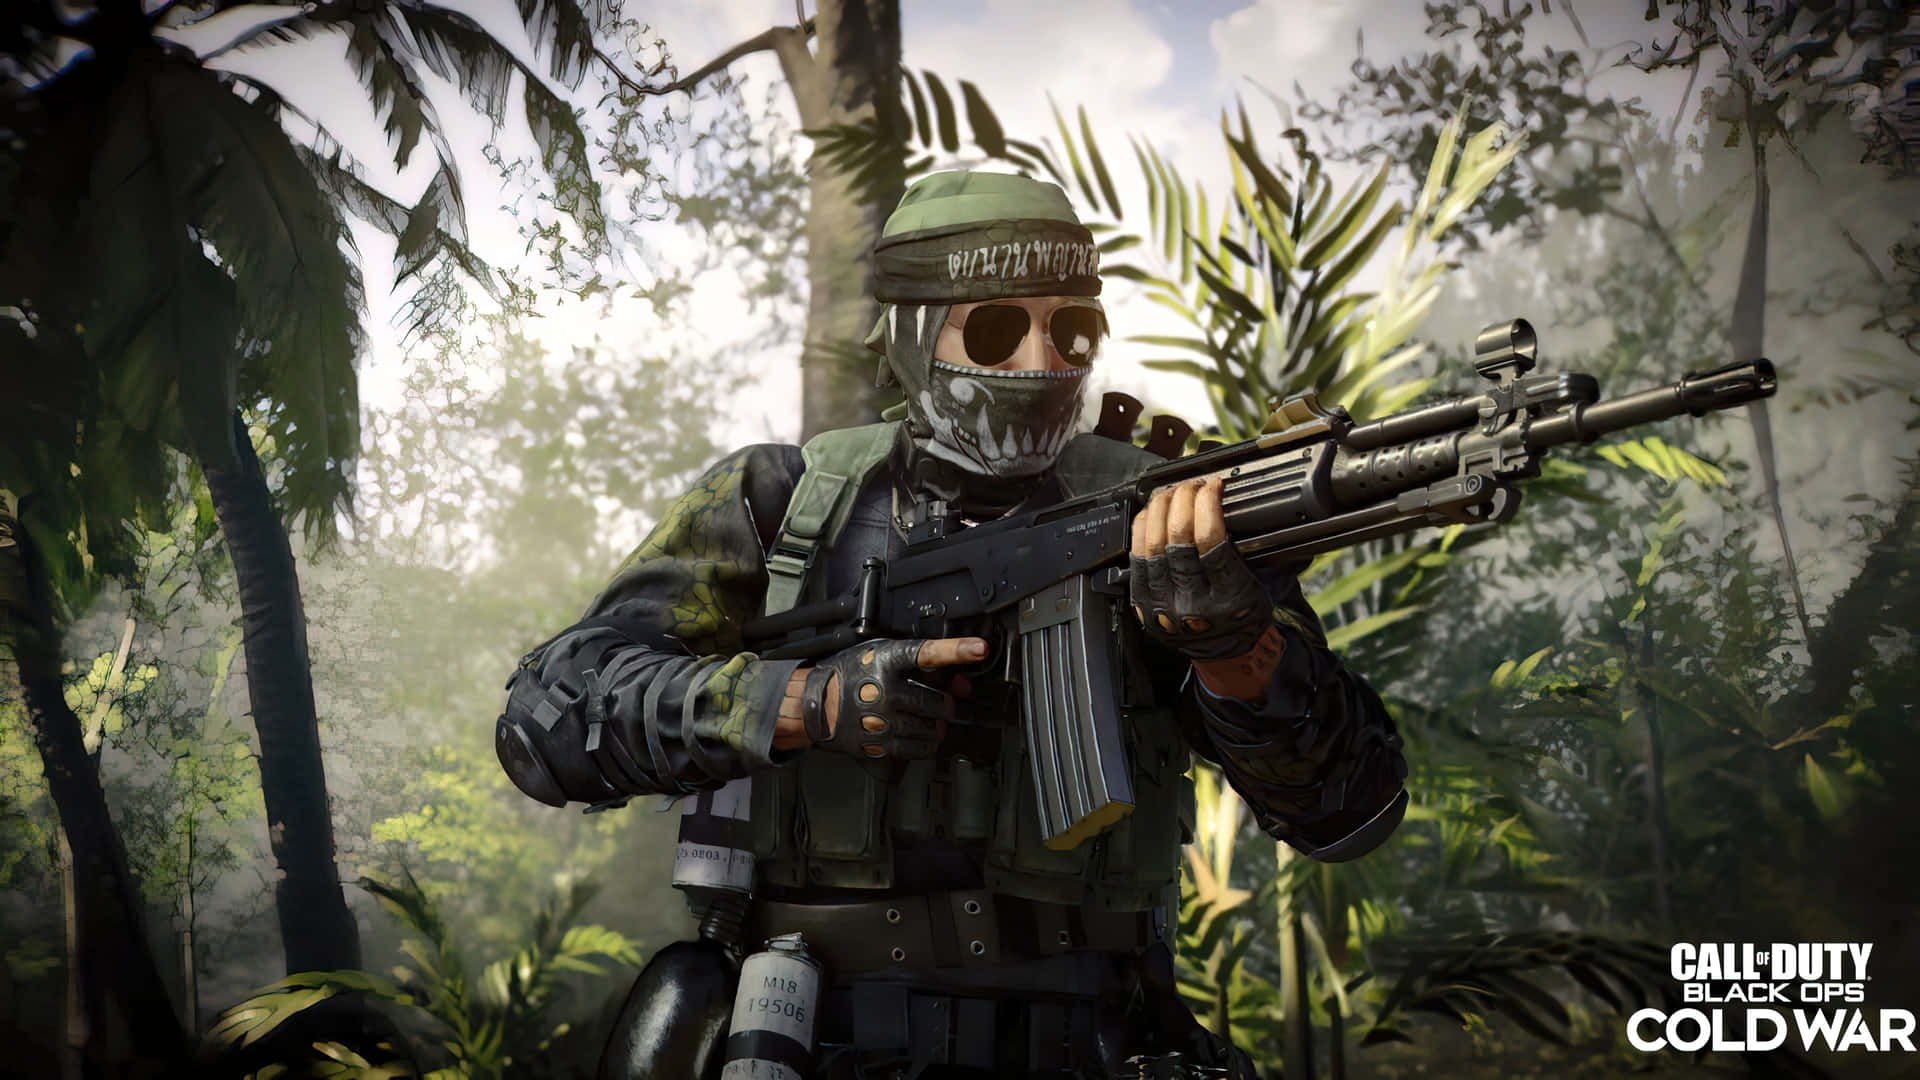 Preparatiper La Battaglia Con Call Of Duty: Black Ops Cold War